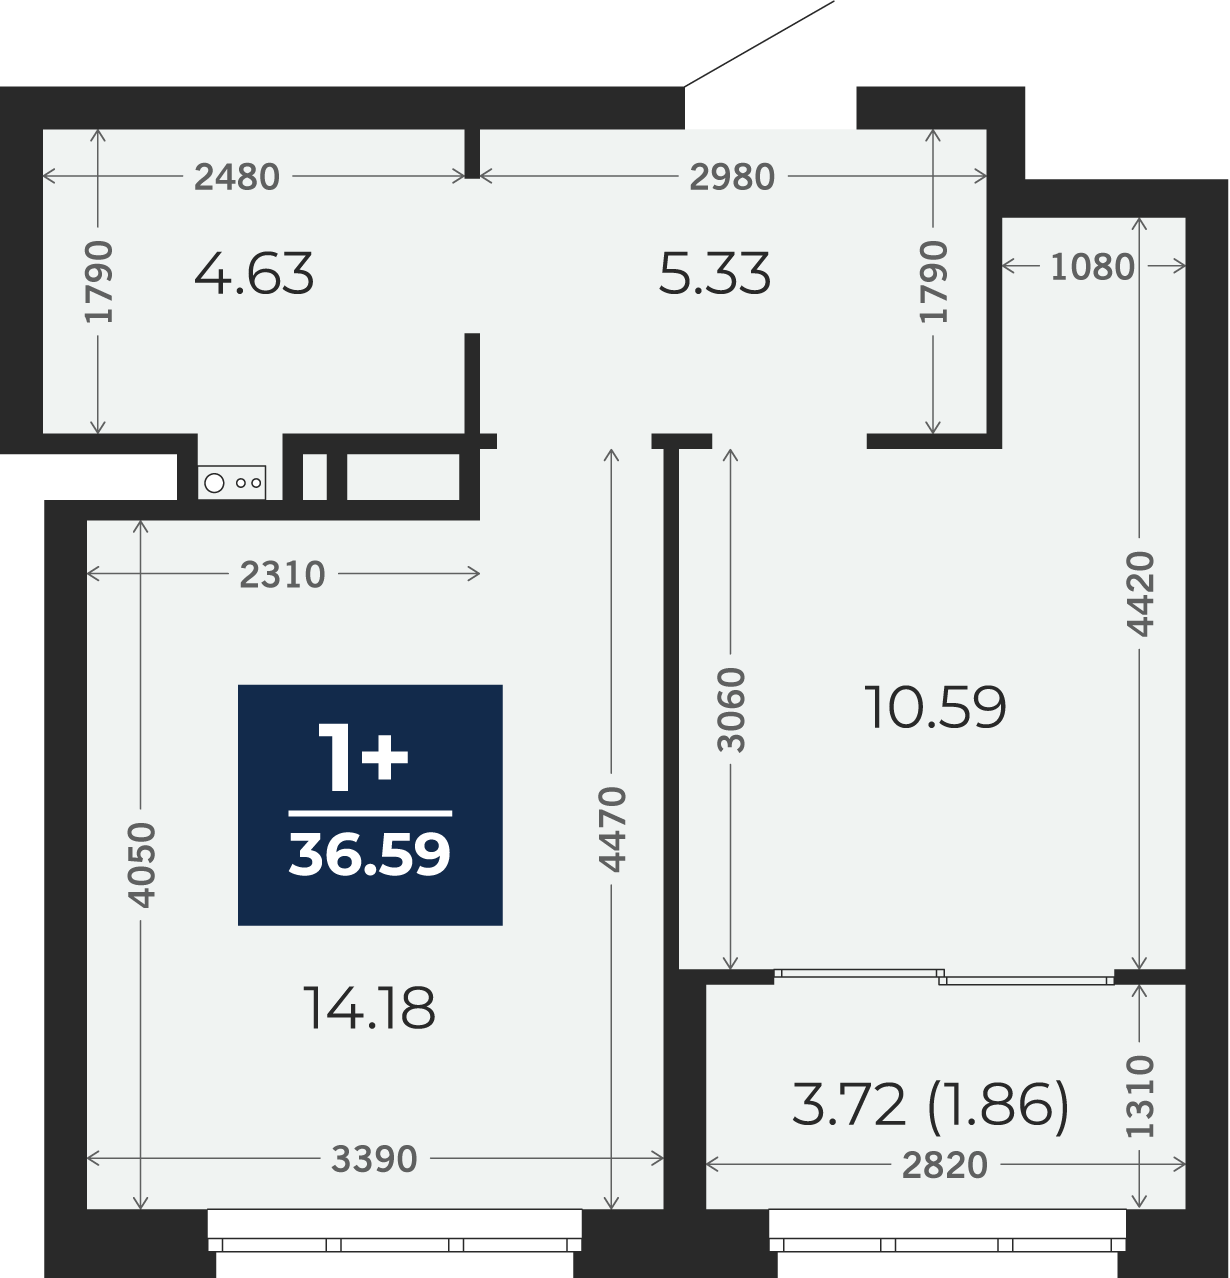 Квартира № 87, 1-комнатная, 36.59 кв. м, 9 этаж